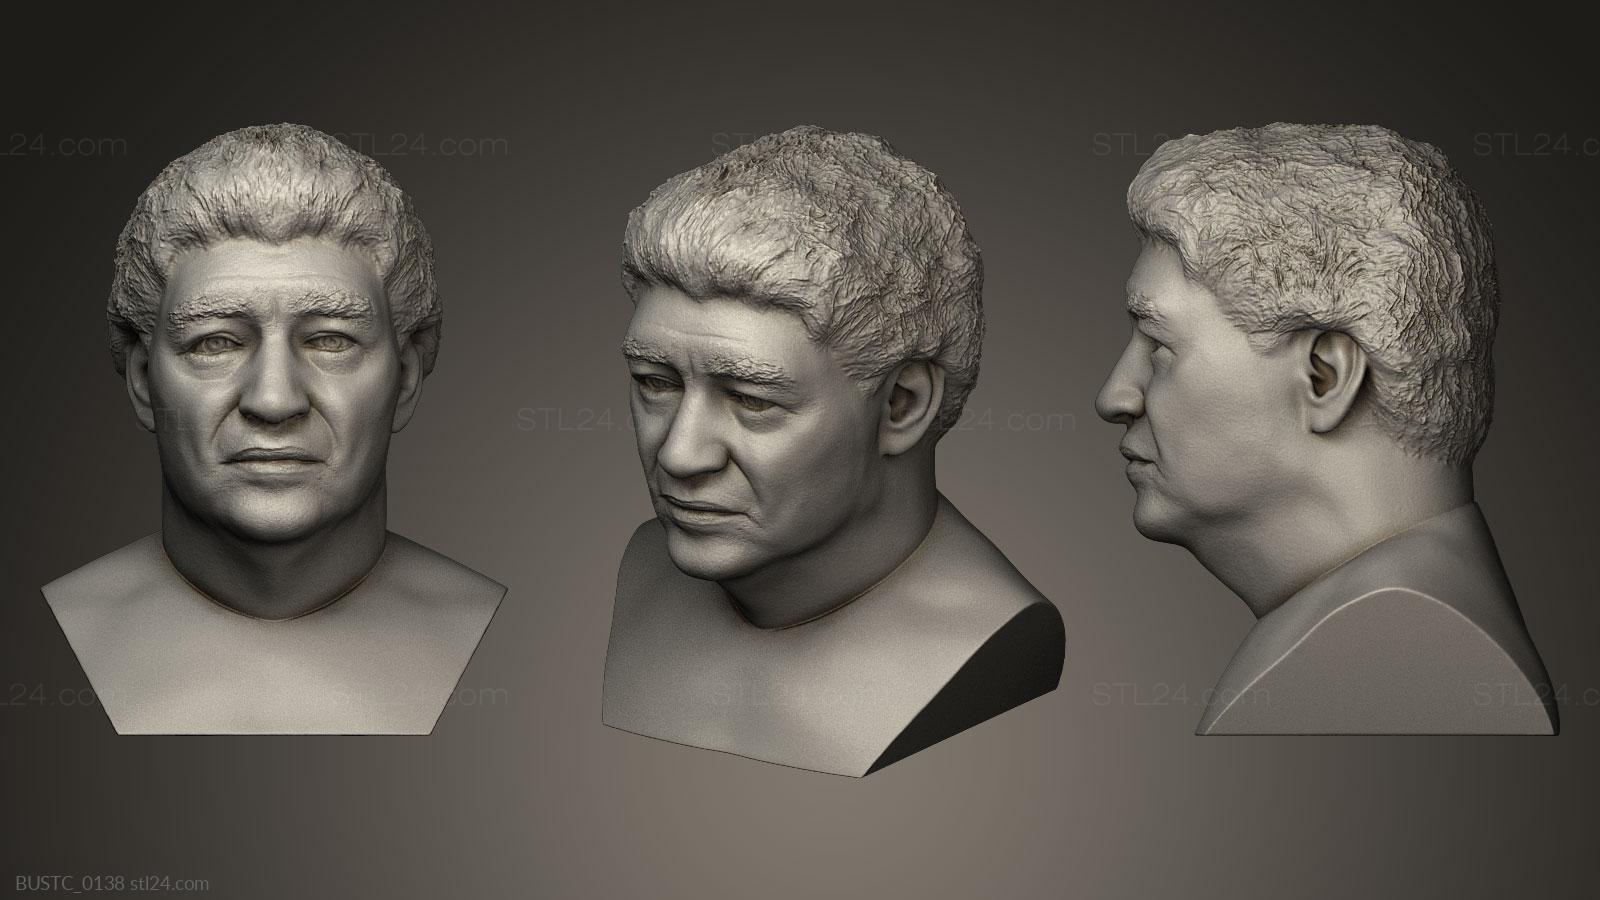 Бюсты и барельефы известных личностей (Диего Марадона в старости, BUSTC_0138) 3D модель для ЧПУ станка